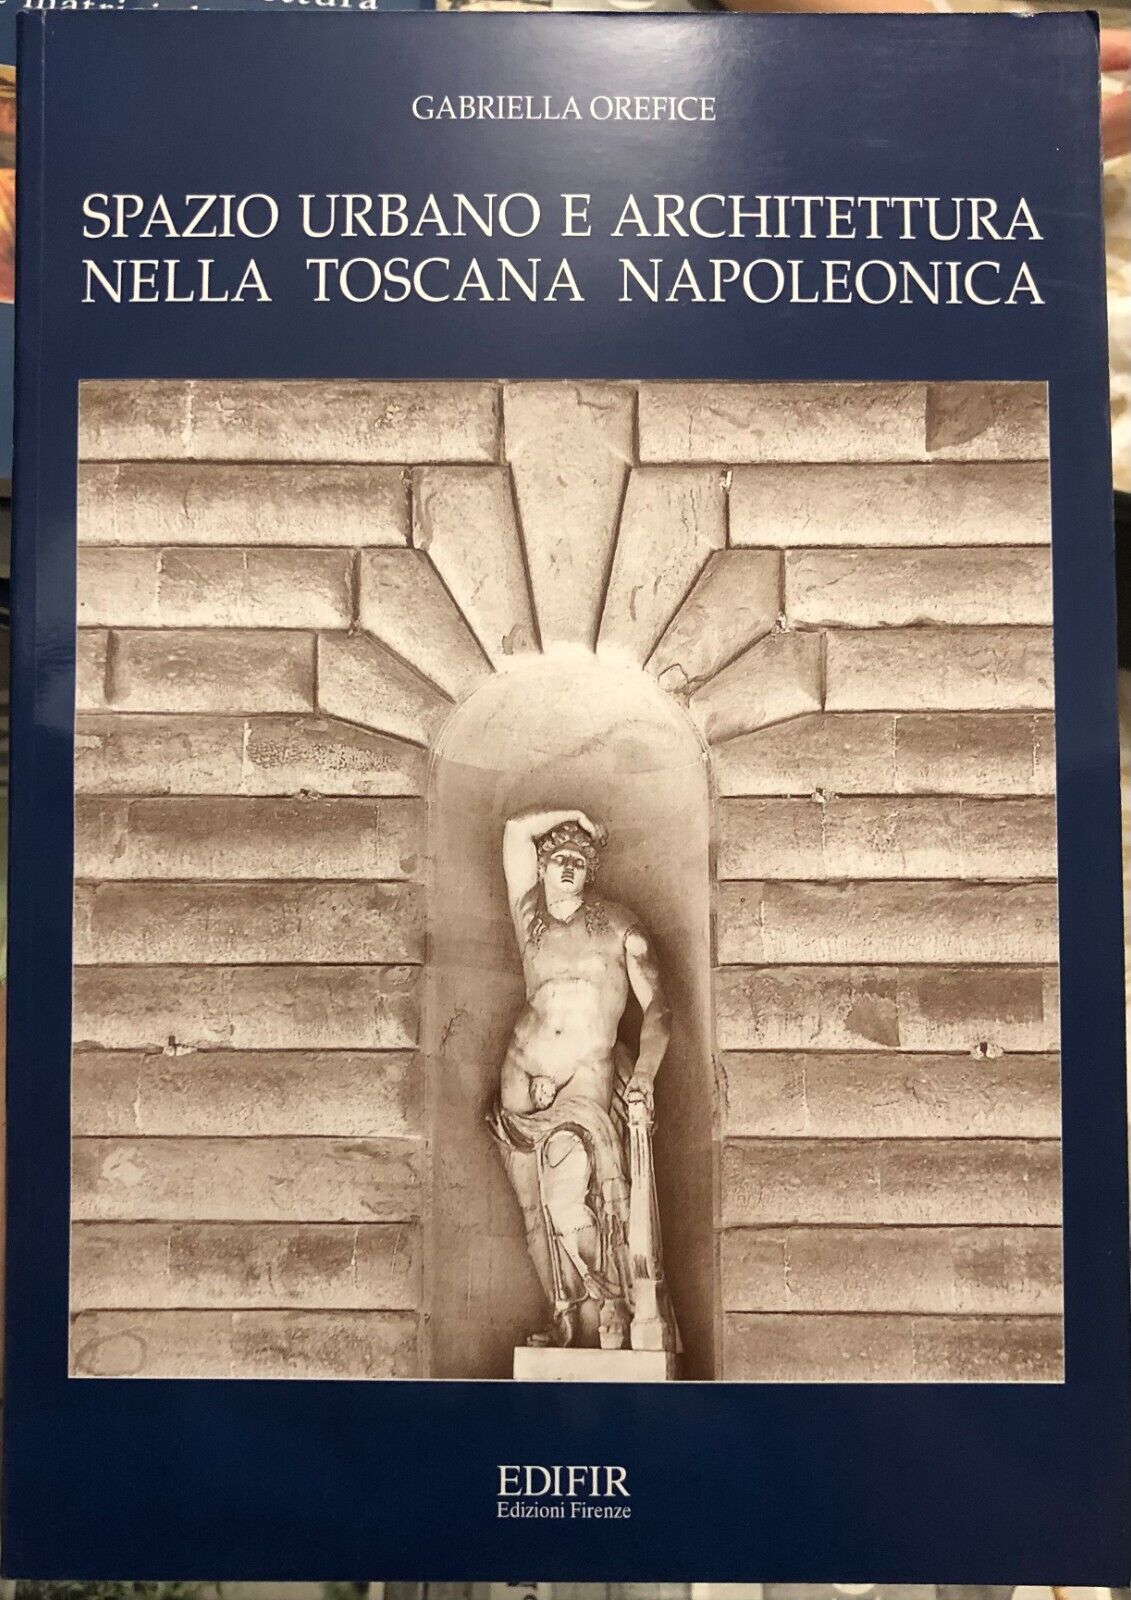 Spazio urbano e architettura nella Toscana napoleonica  di Gabriella Orefice, 2